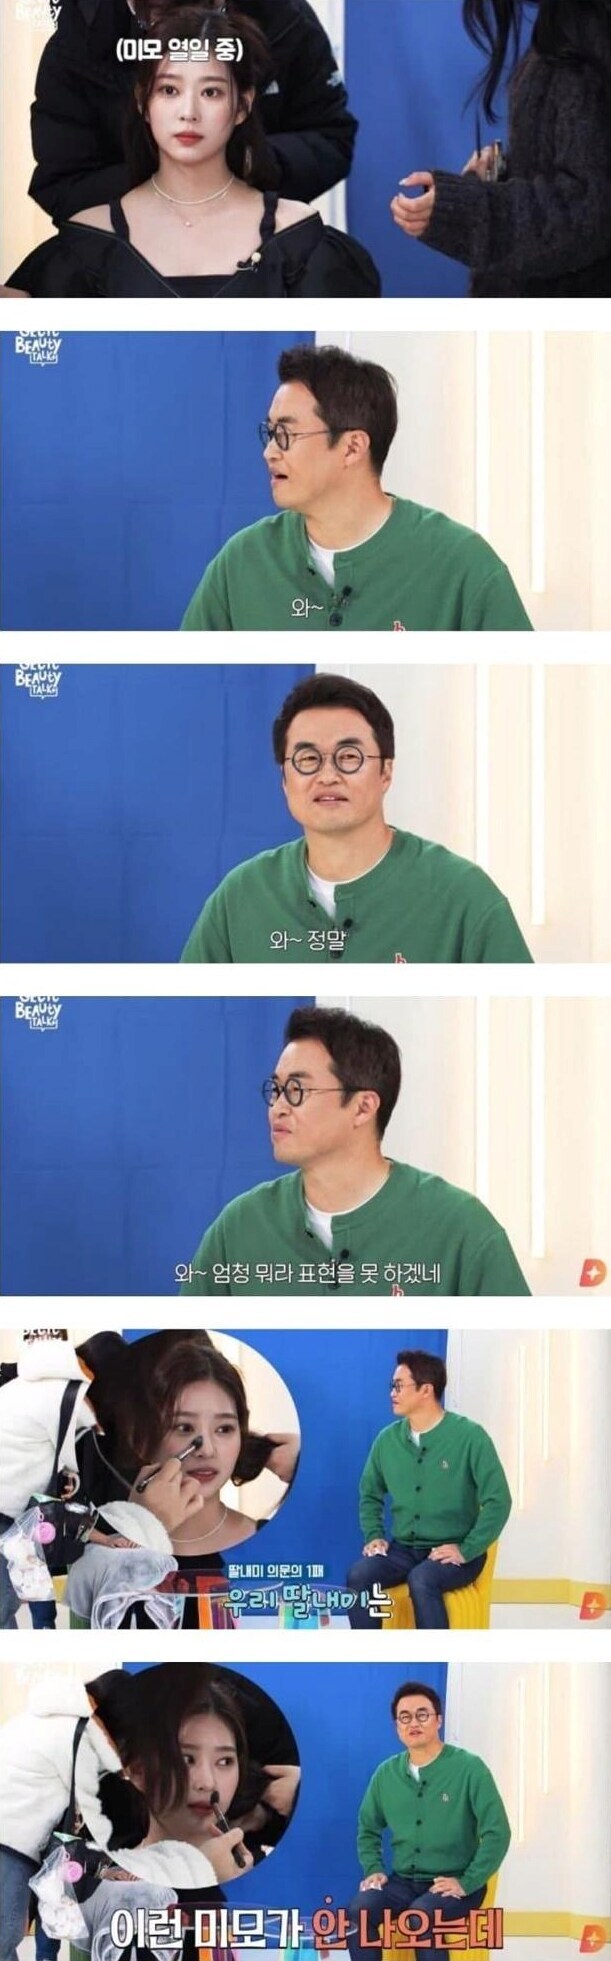 아이돌 처음 본 학원 강사의 반응